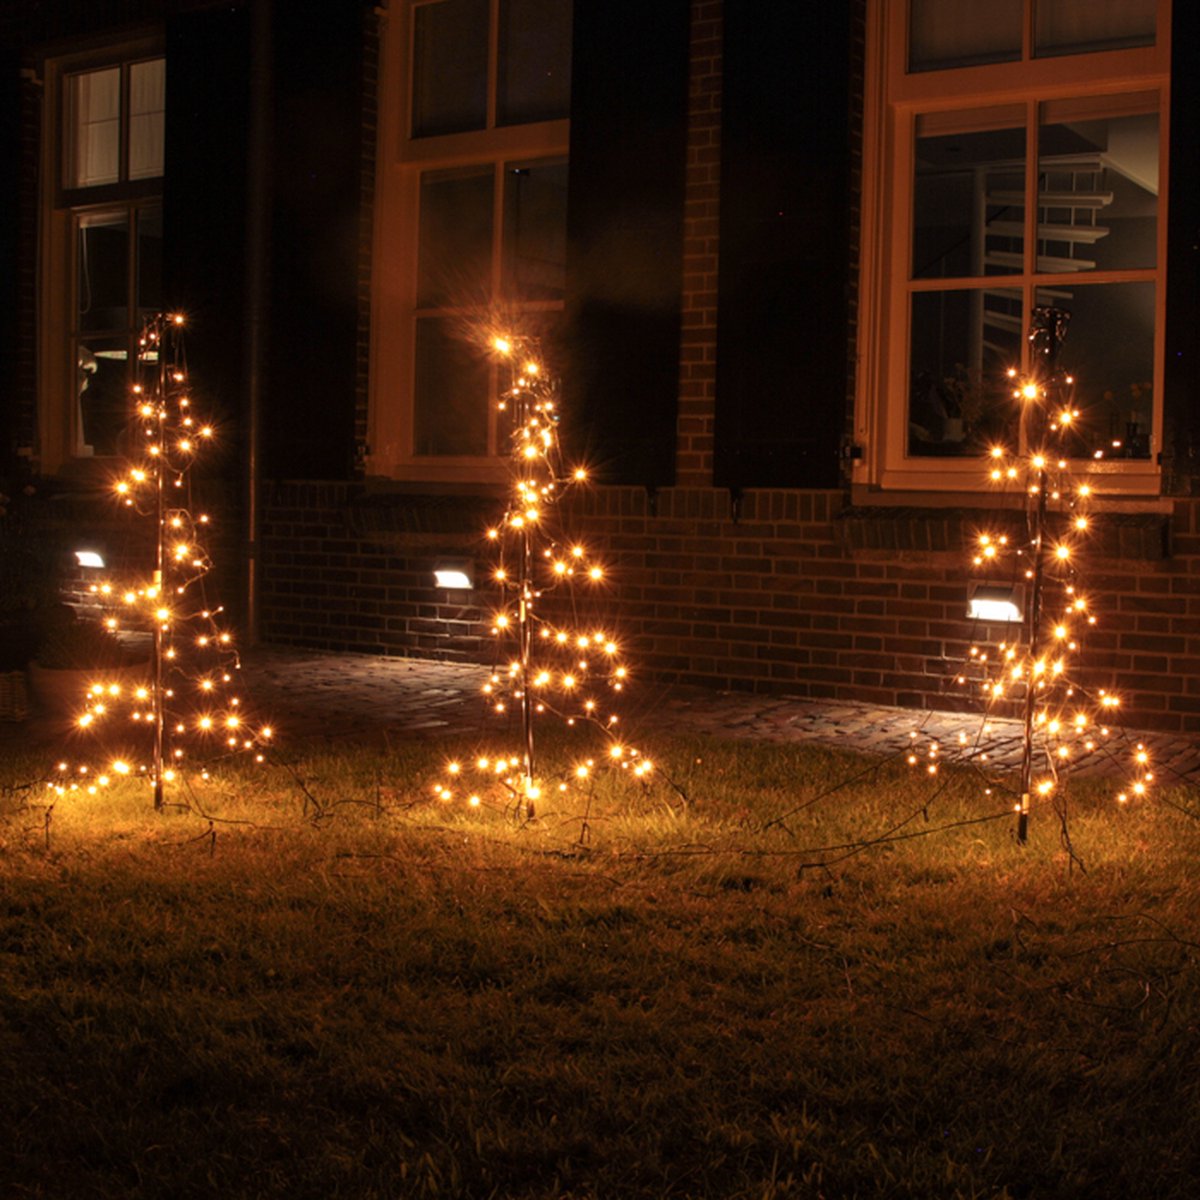 Drie kersrtbomen voor buiten - buitenverlichting - kerstverlichting - Sid sparkling collection